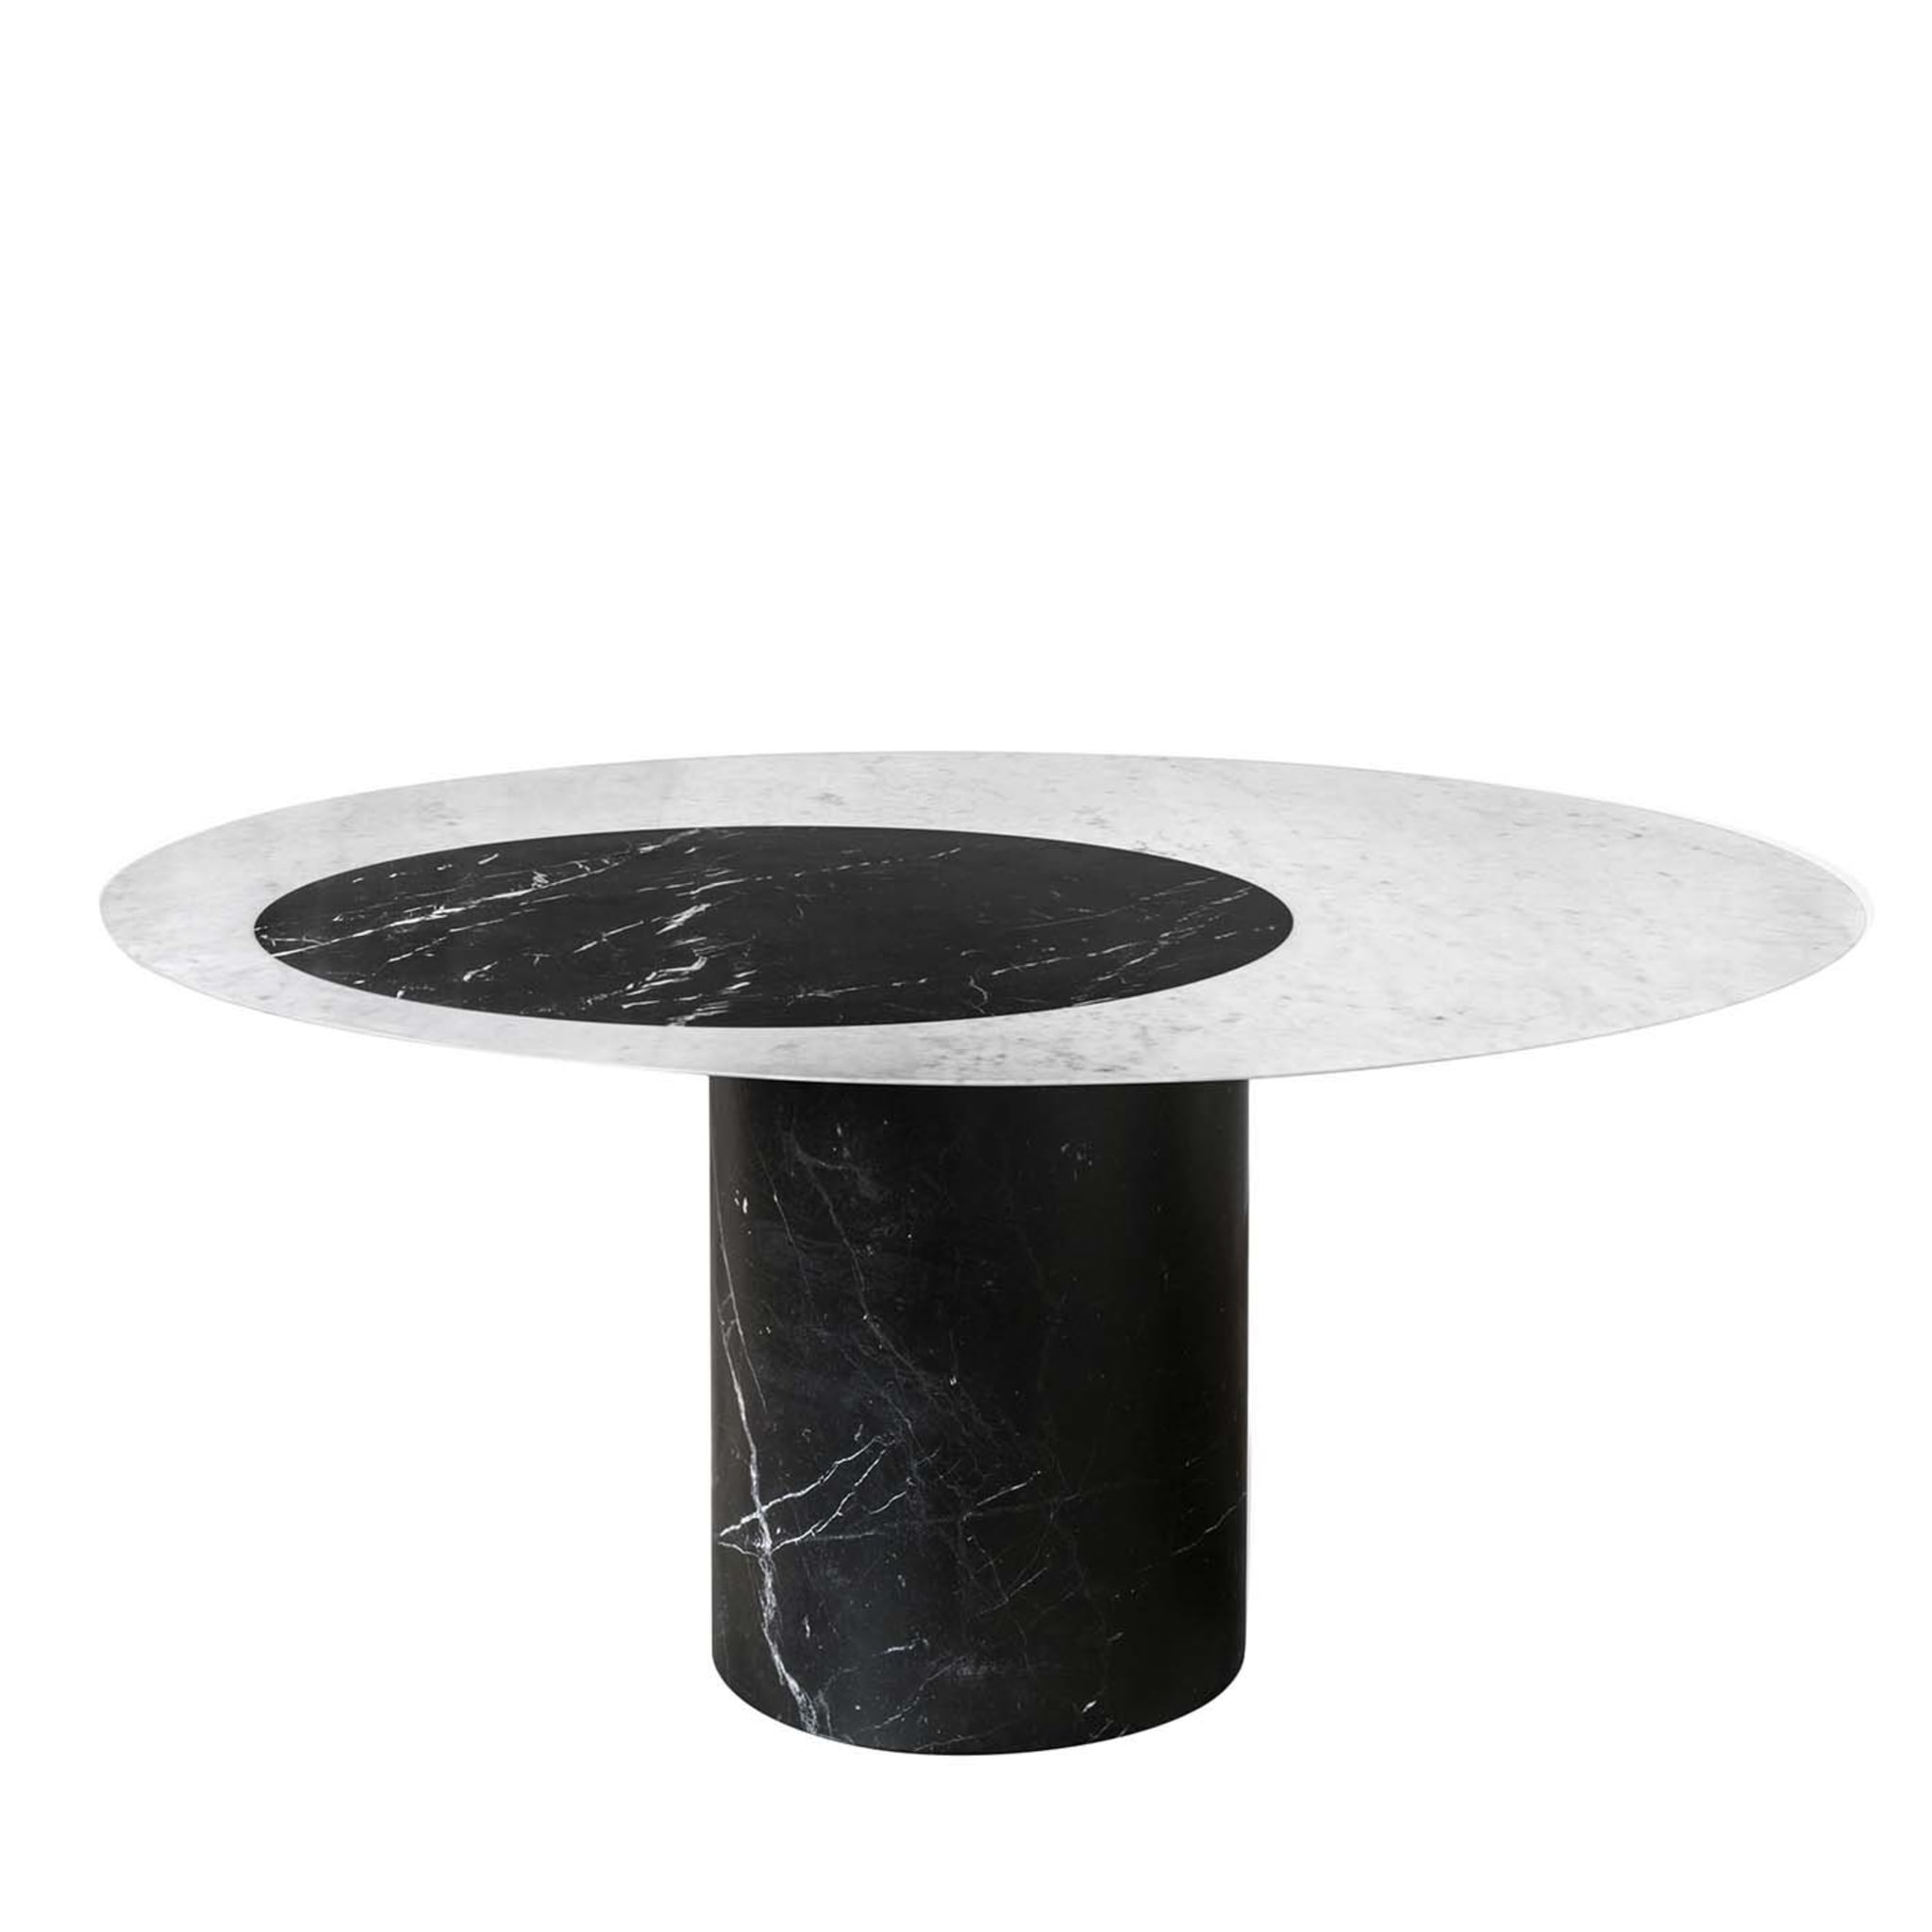 Tavolo da pranzo rotondo in marmo bianco e nero Proiezioni #1 di Elisa Ossino - Vista principale